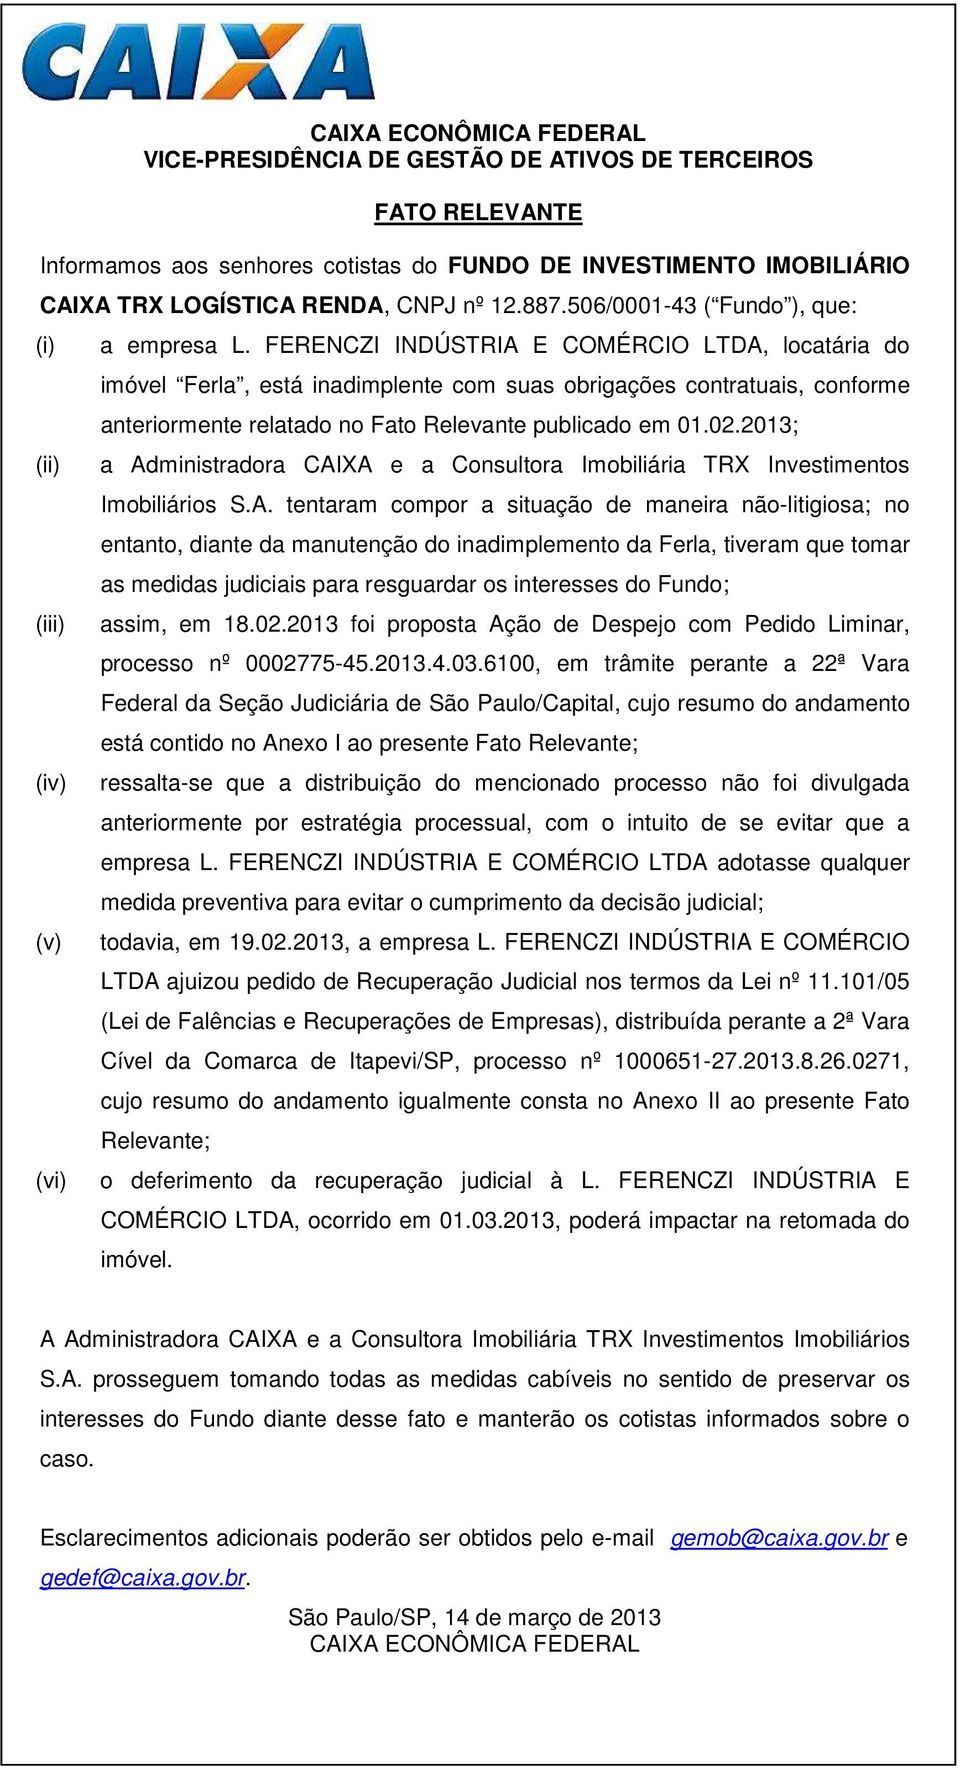 FERENCZI INDÚSTRIA E COMÉRCIO LTDA, locatária do imóvel Ferla, está inadimplente com suas obrigações contratuais, conforme anteriormente relatado no Fato Relevante publicado em 01.02.